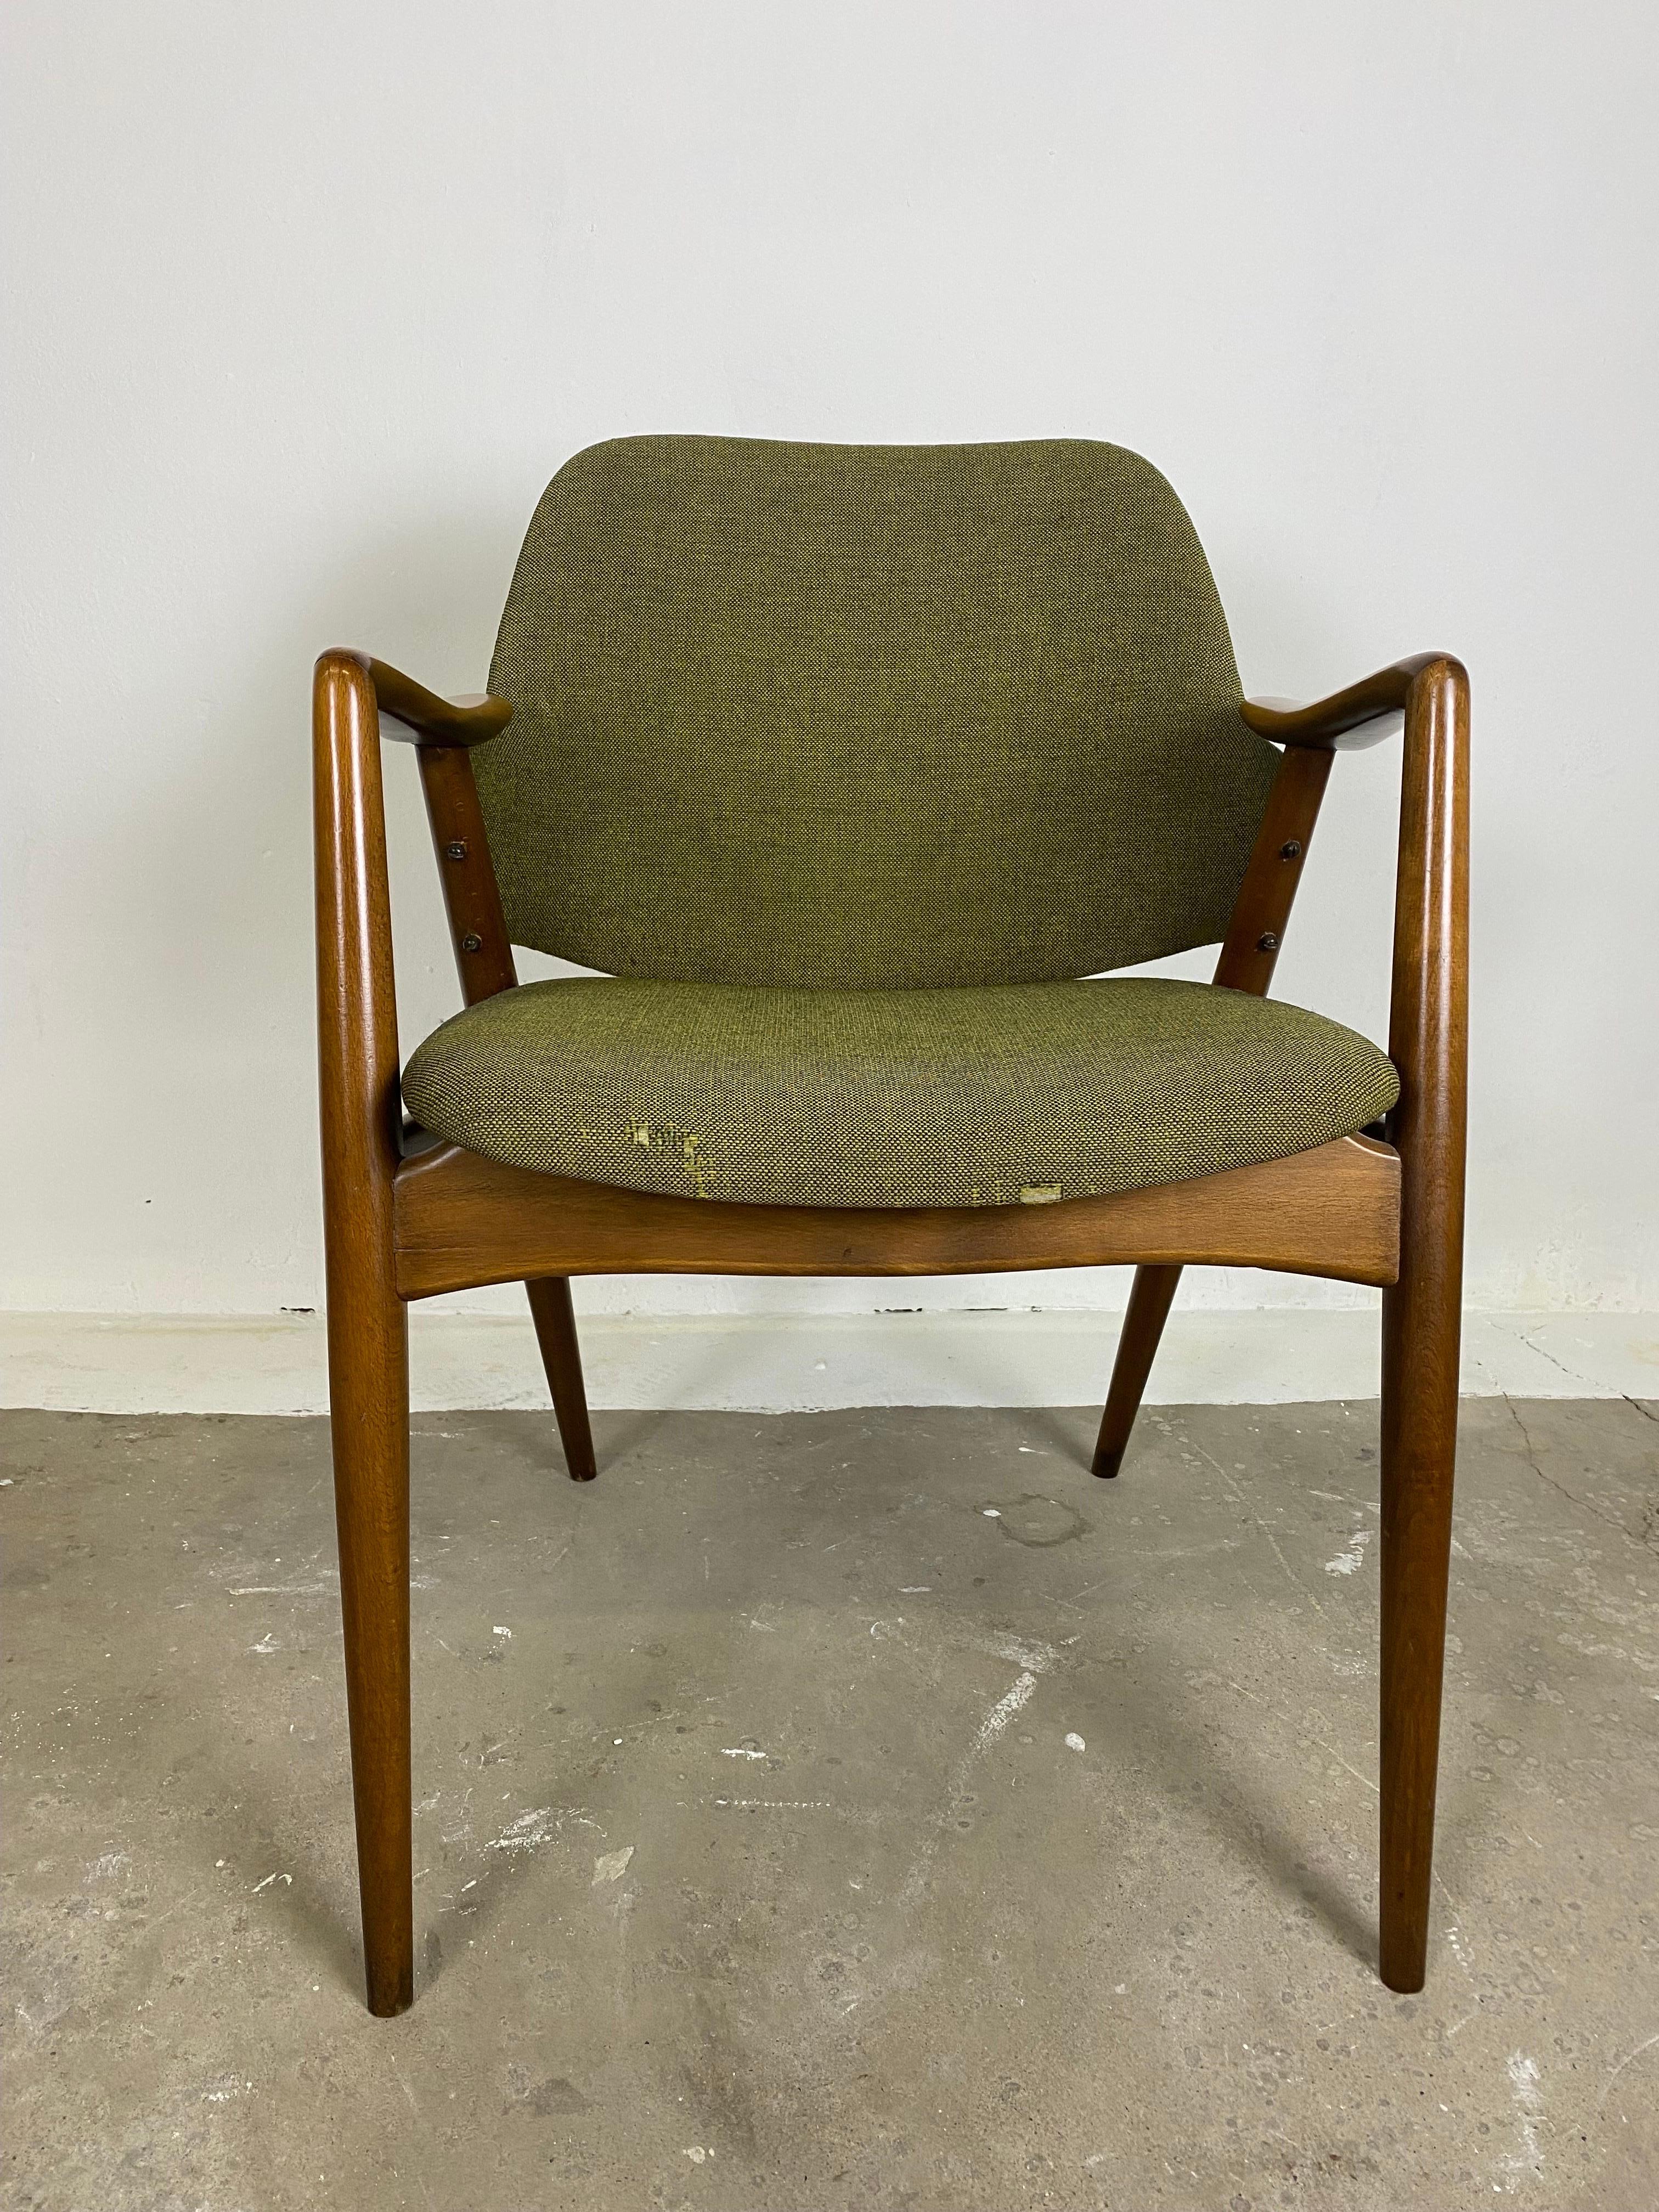 Pour peut-être refaire le rembourrage : Un ensemble de  deux chaises Kontur  par Alf Svensson pour Dux of Sweden, dans les années 1950.
Très stable, confortable et ergonomique.

Ces chaises sont, par leur design et leur qualité, parfaitement